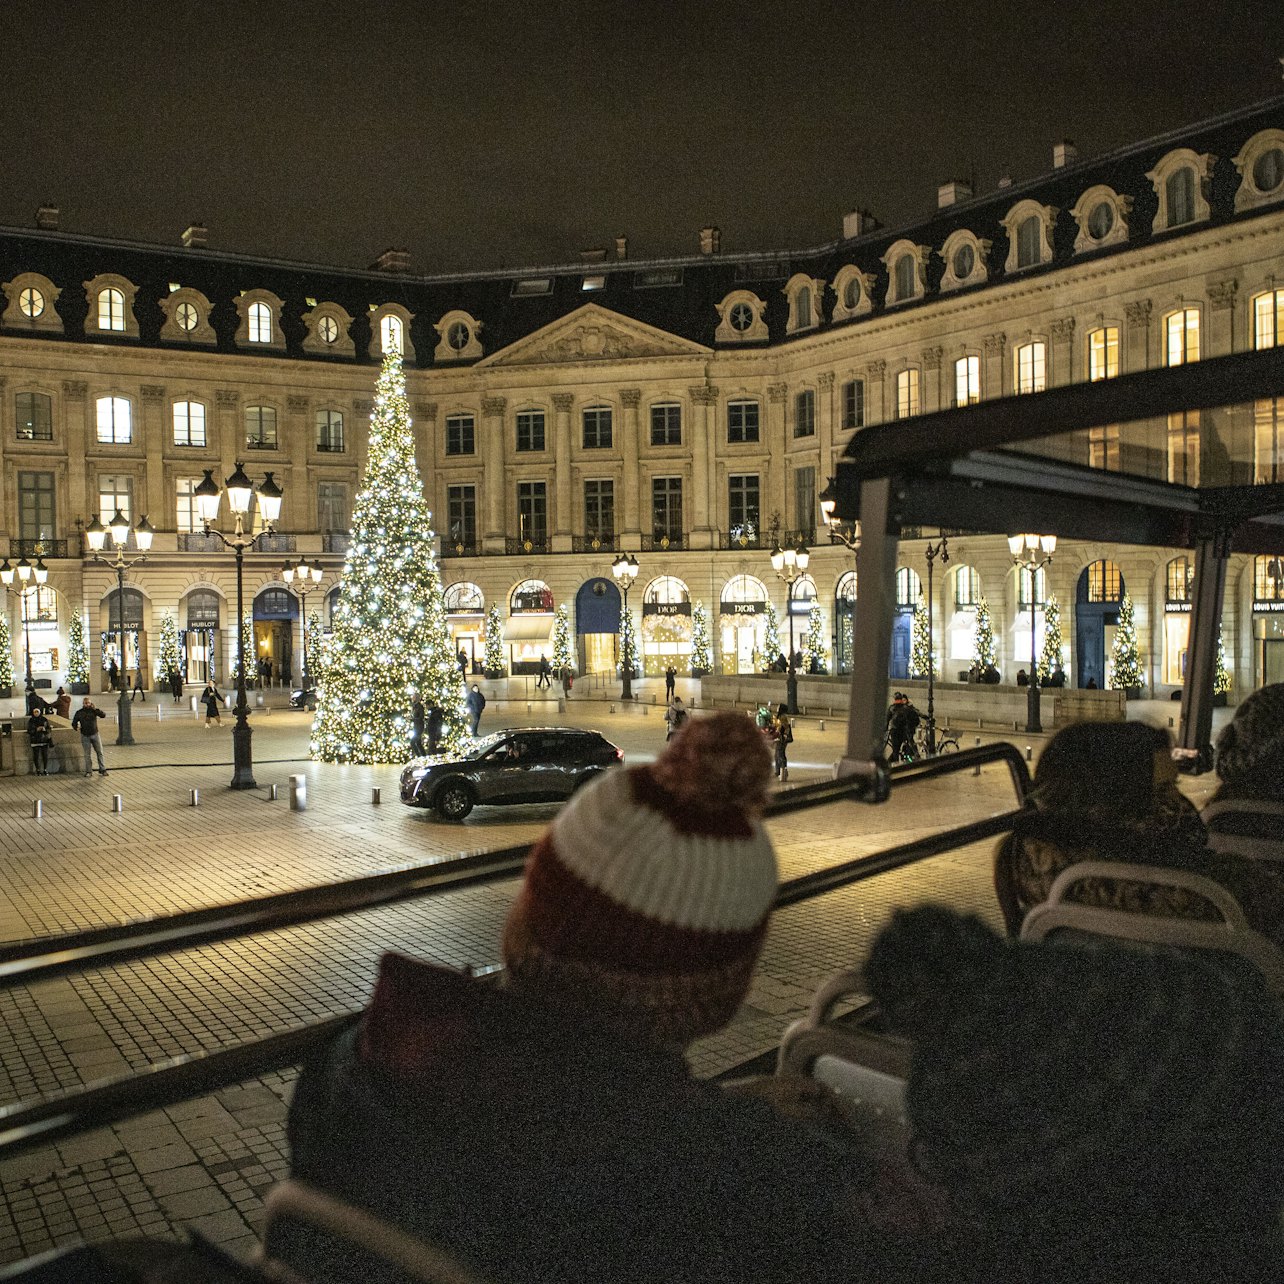 Tootbus: Passeio Noturno em Paris ecologicamente correto - Acomodações em Paris